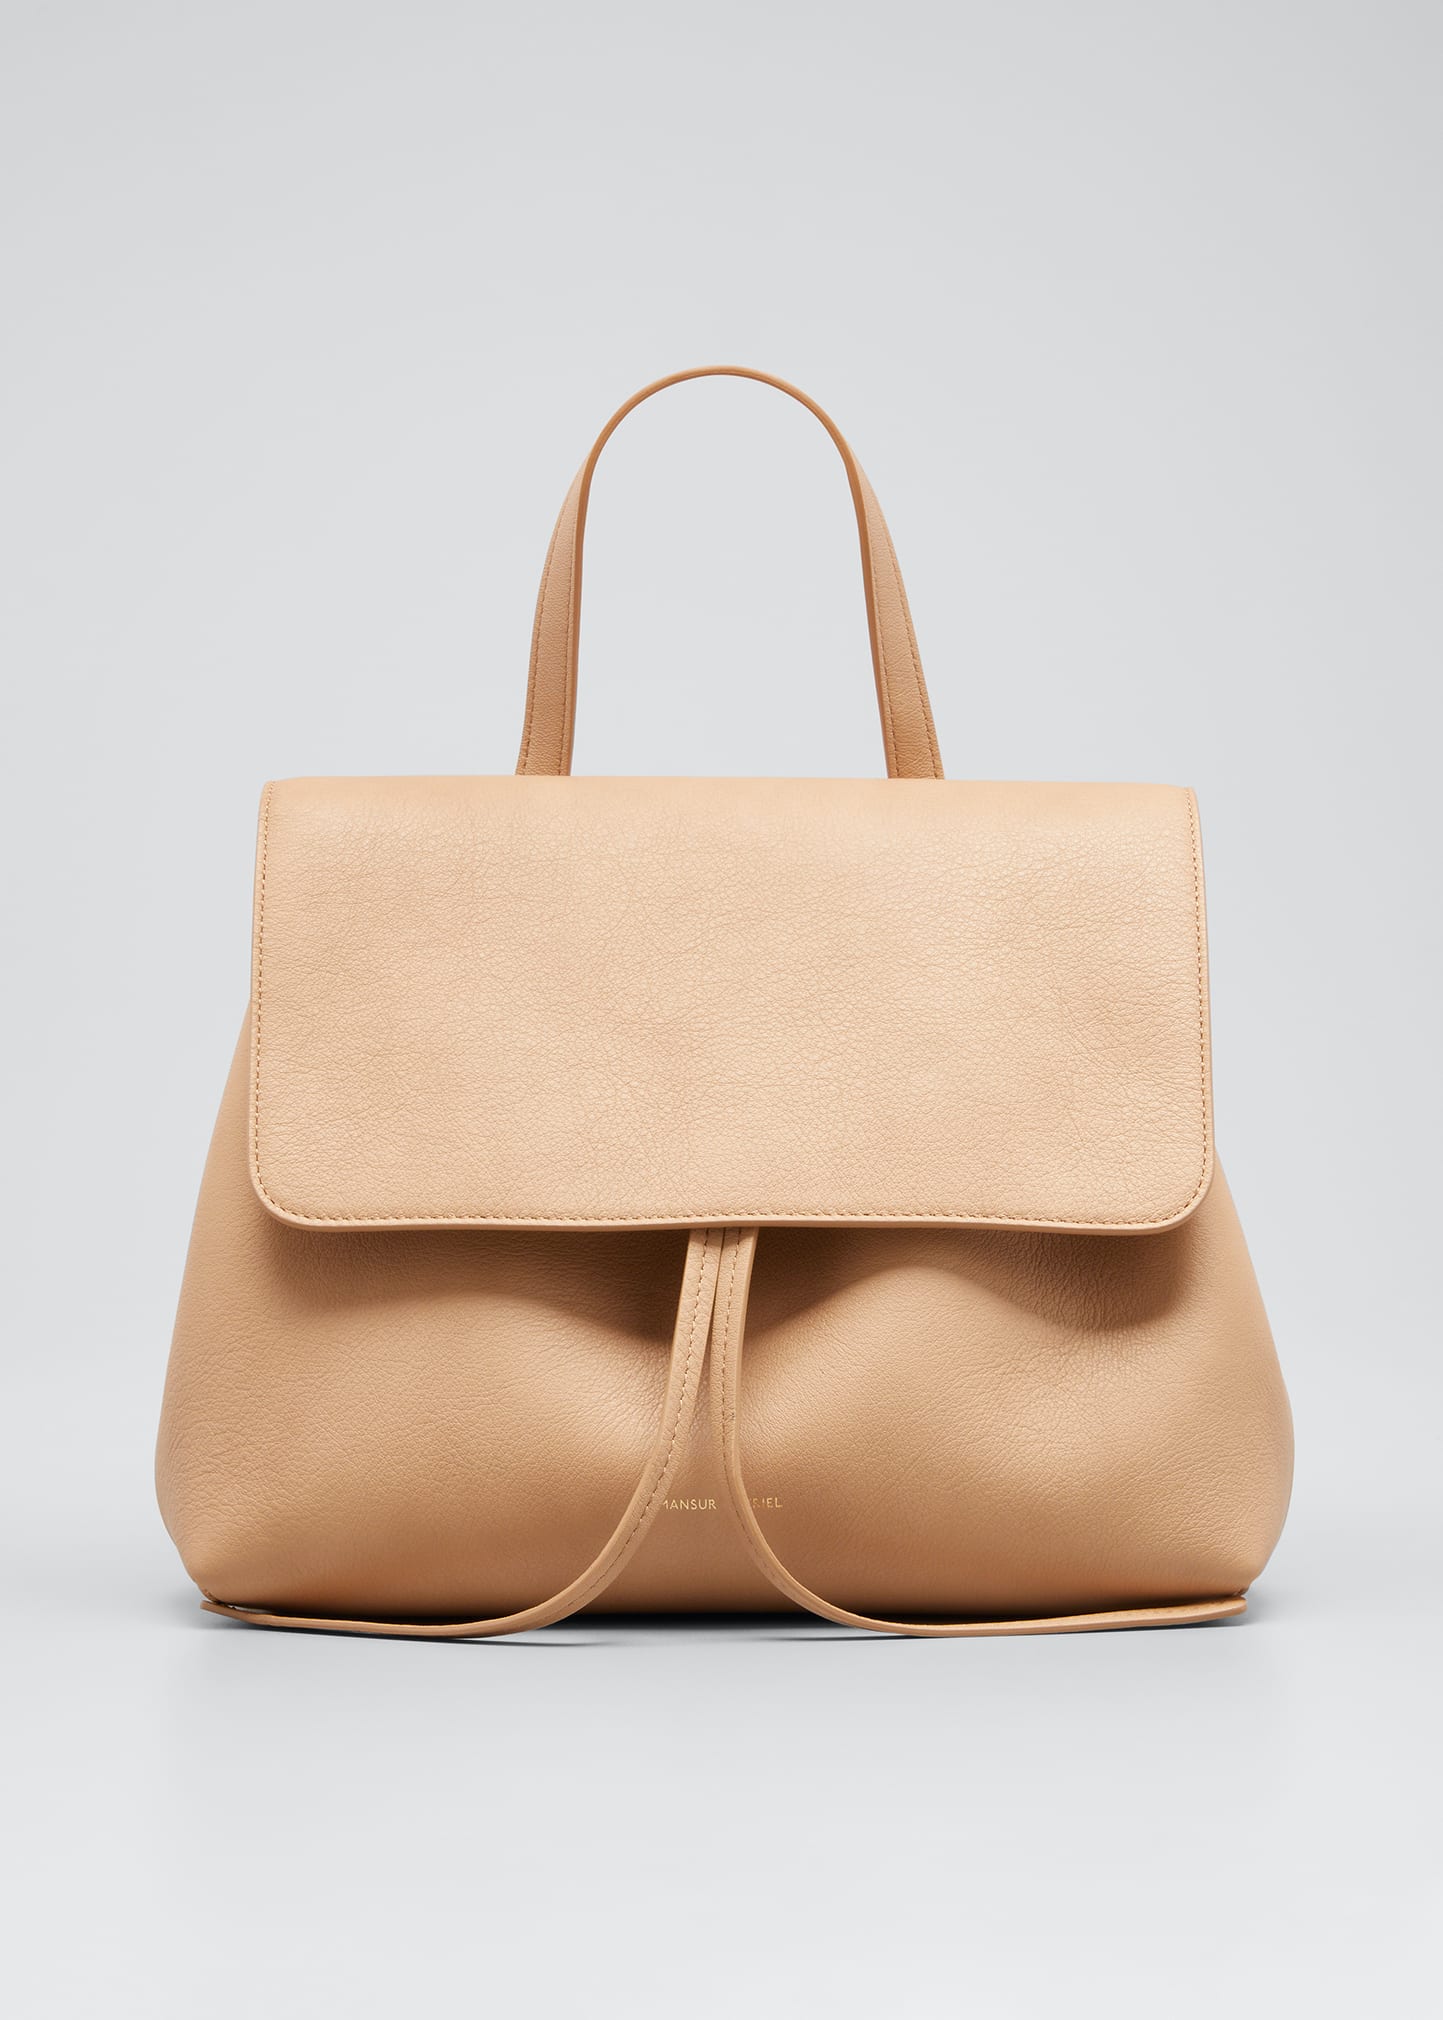 Mansur Gavriel Mini Soft Lady Tote Bag